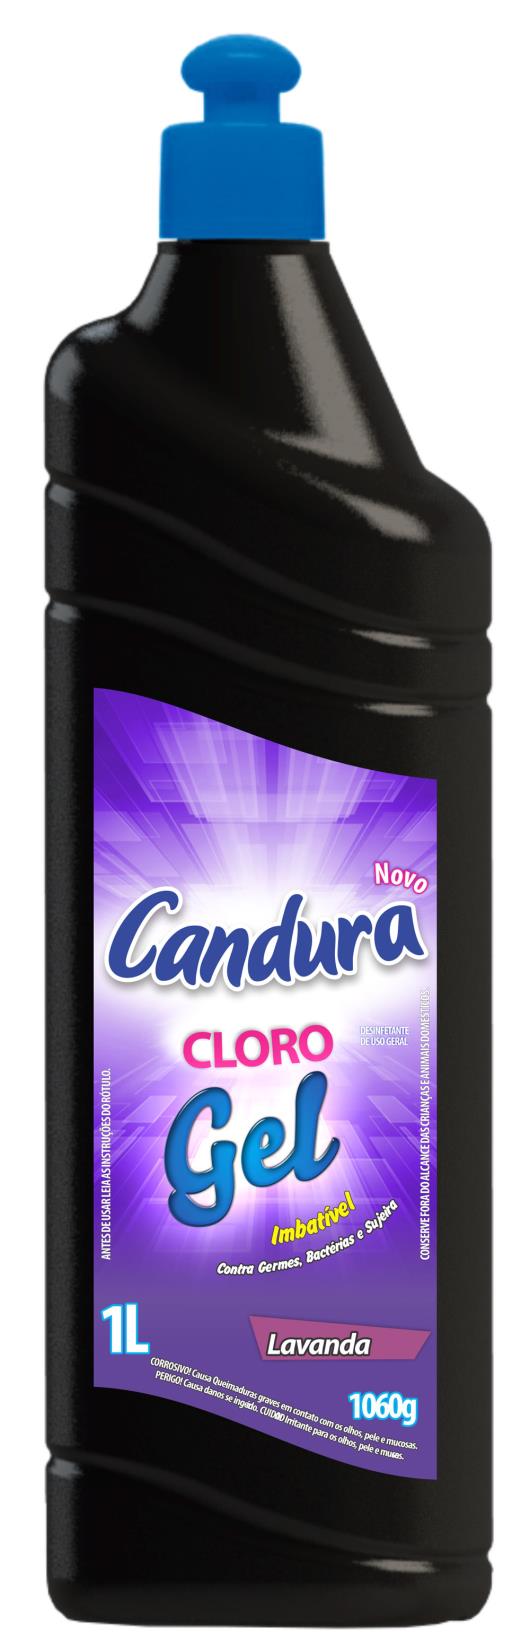 Desinfetante cloro gel lavanda Candura 1 litro - Imagem em destaque